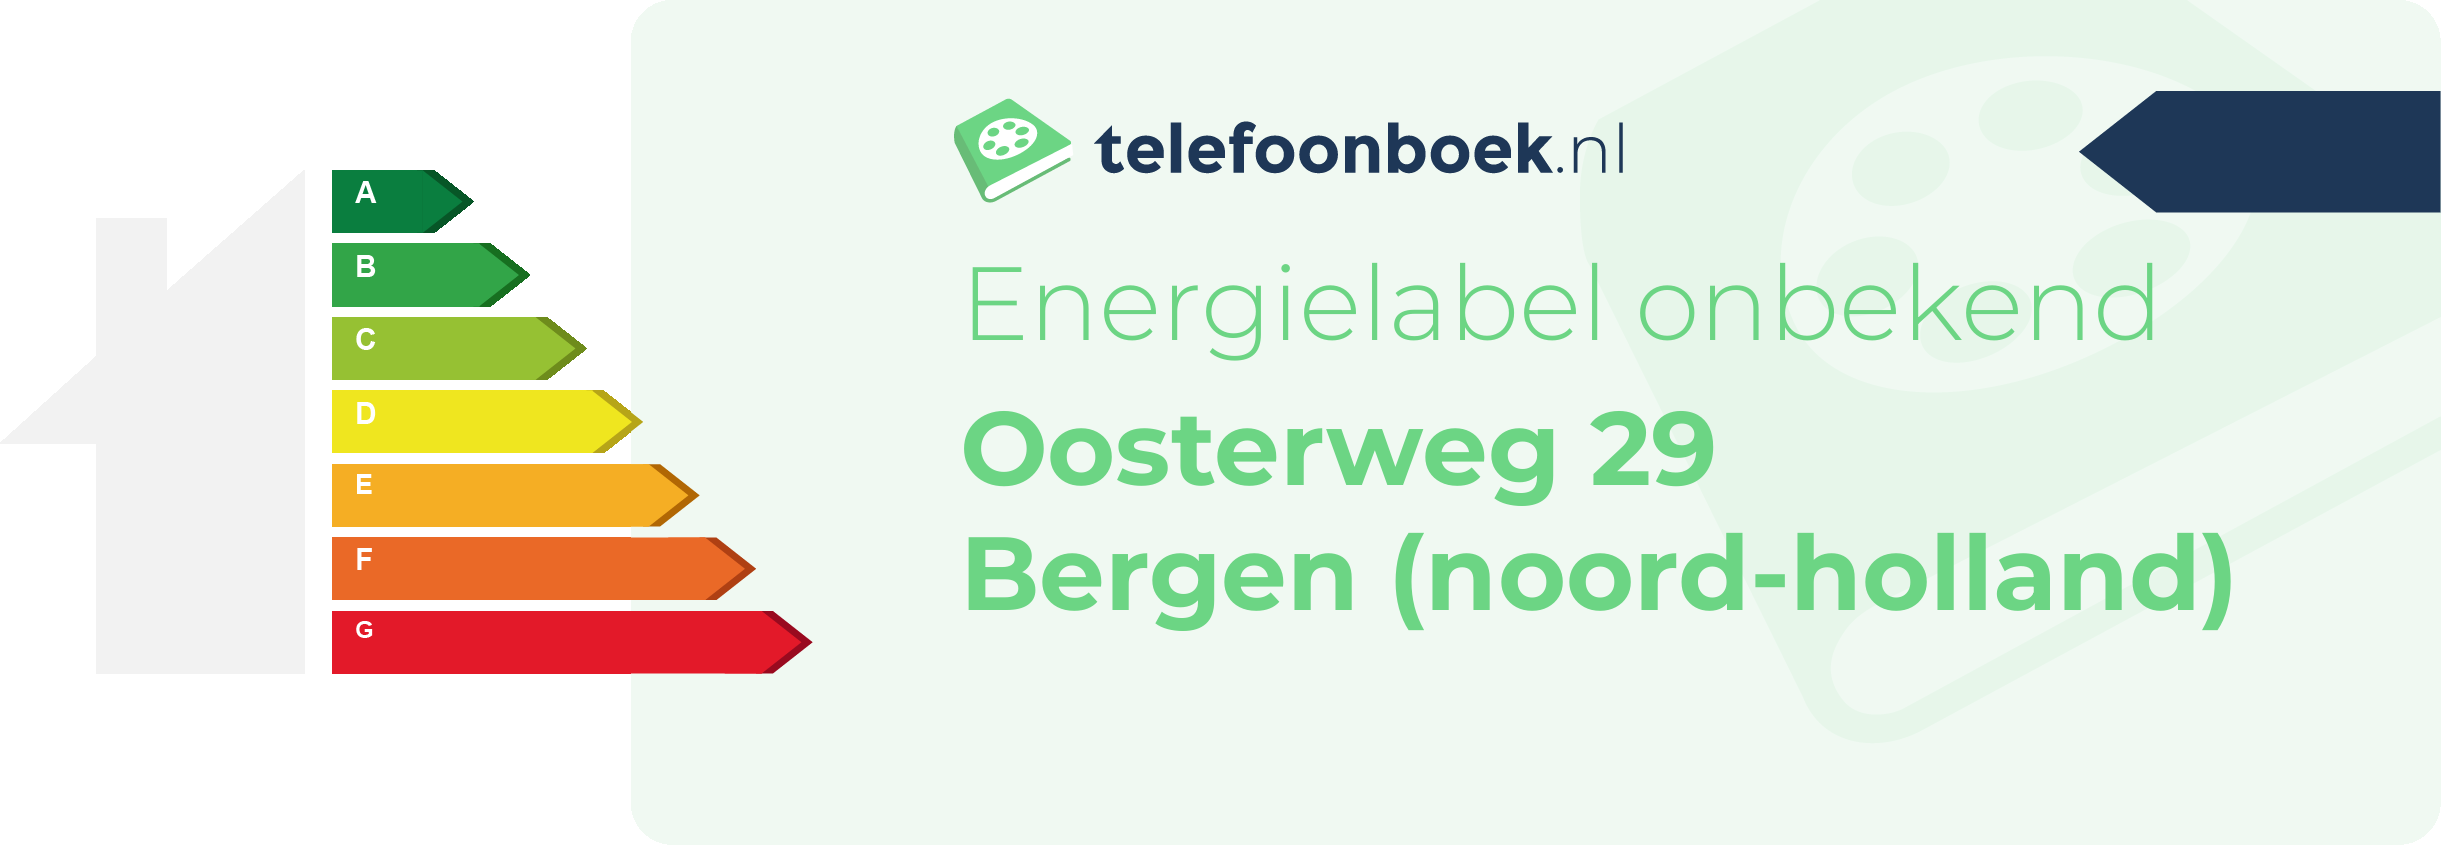 Energielabel Oosterweg 29 Bergen (Noord-Holland)